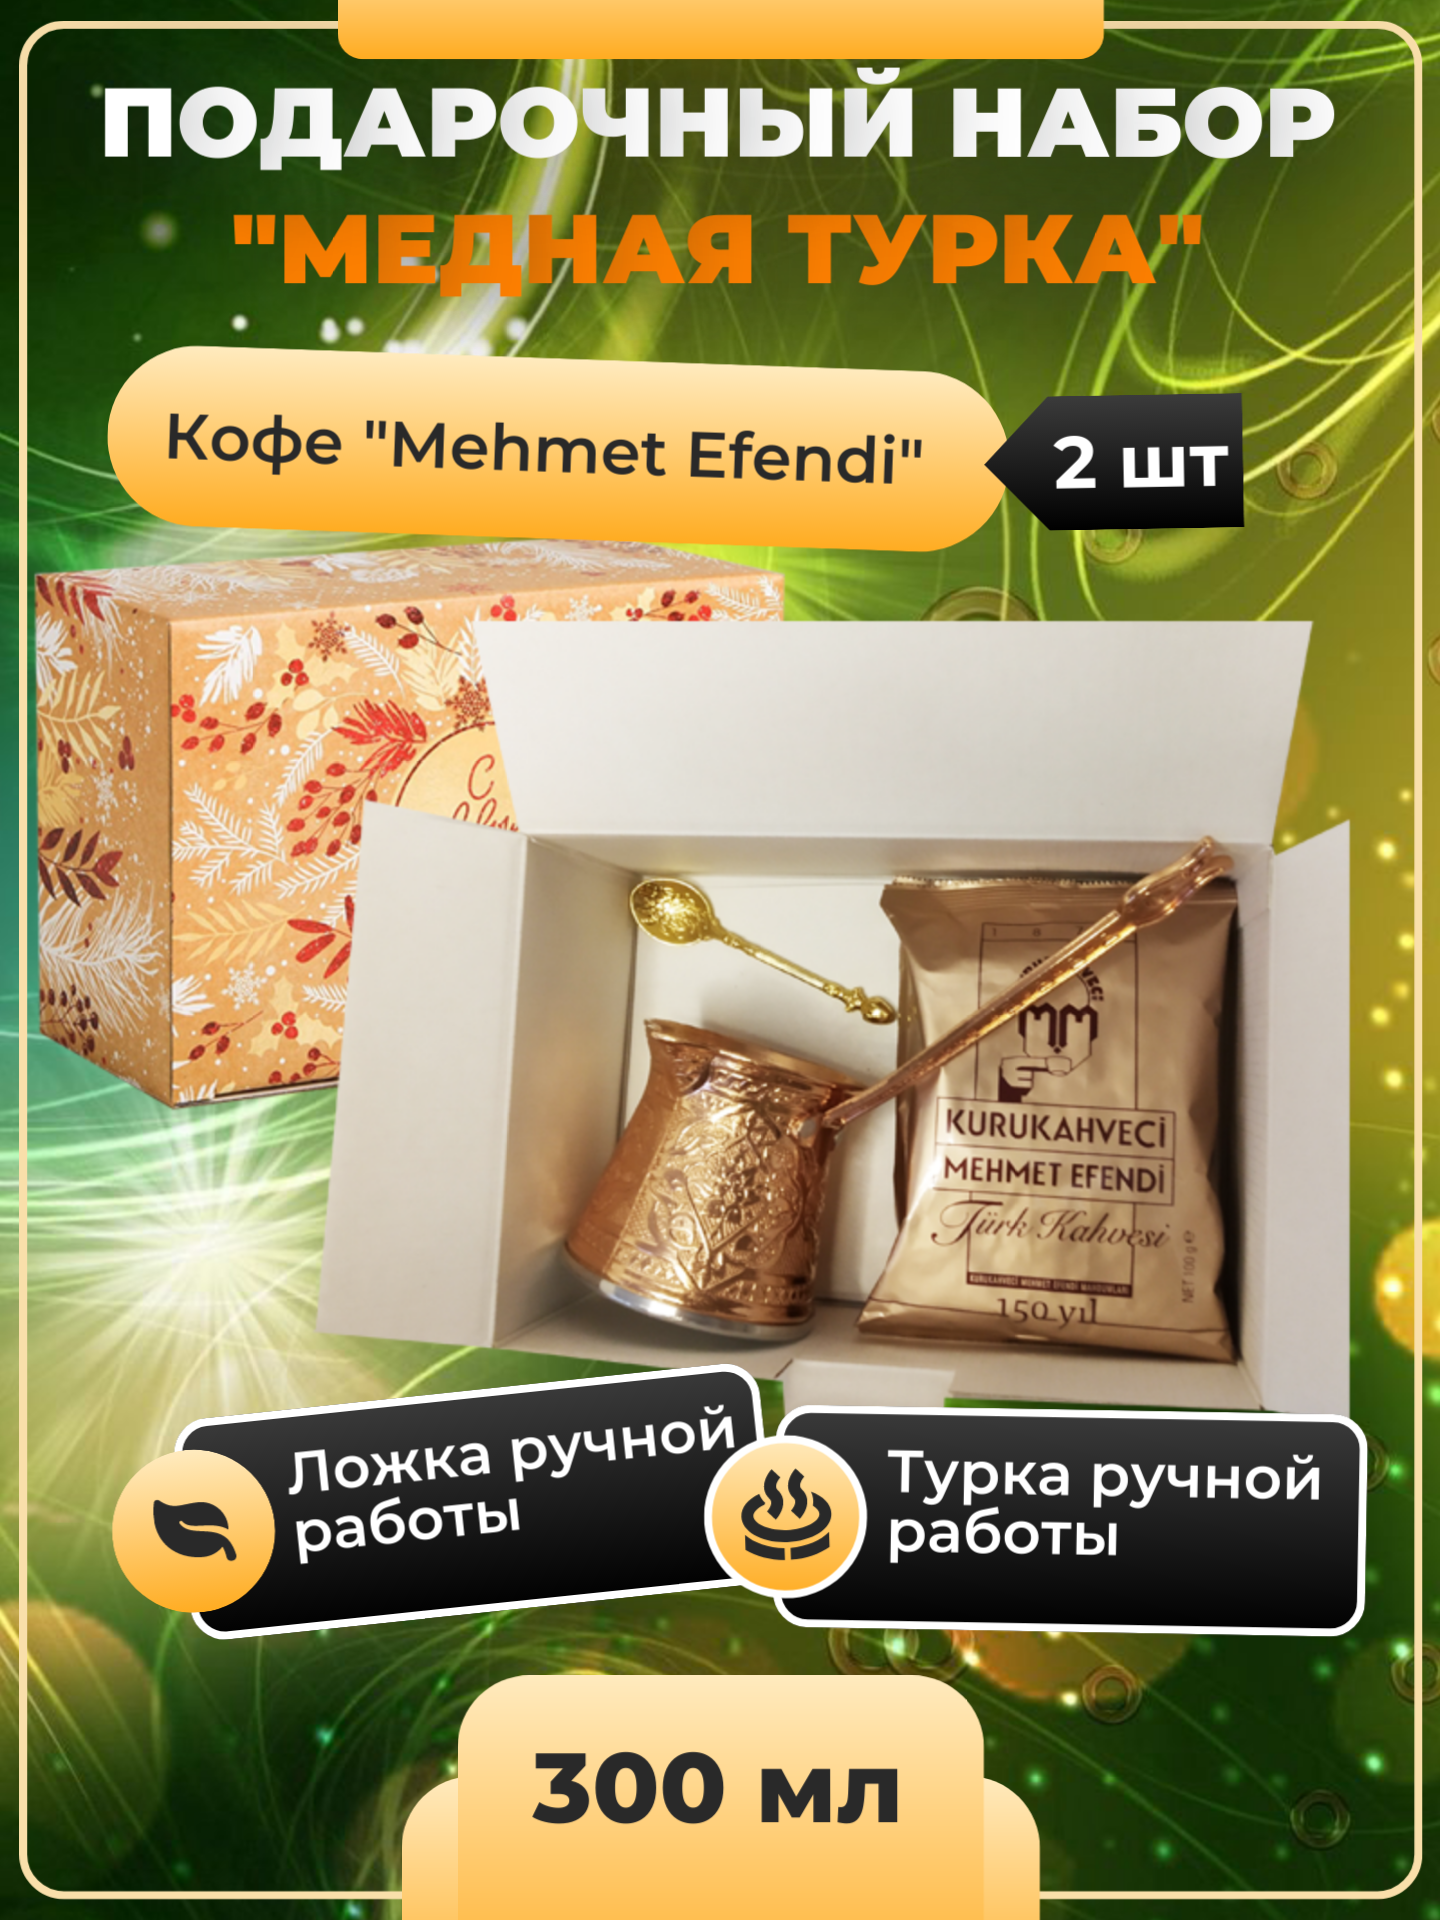 Подарочный набор "Медная турка" (Турка 300 мл, ложка, кофе молотый Mehmet Efendi) на новый год дракона, на любой праздник.